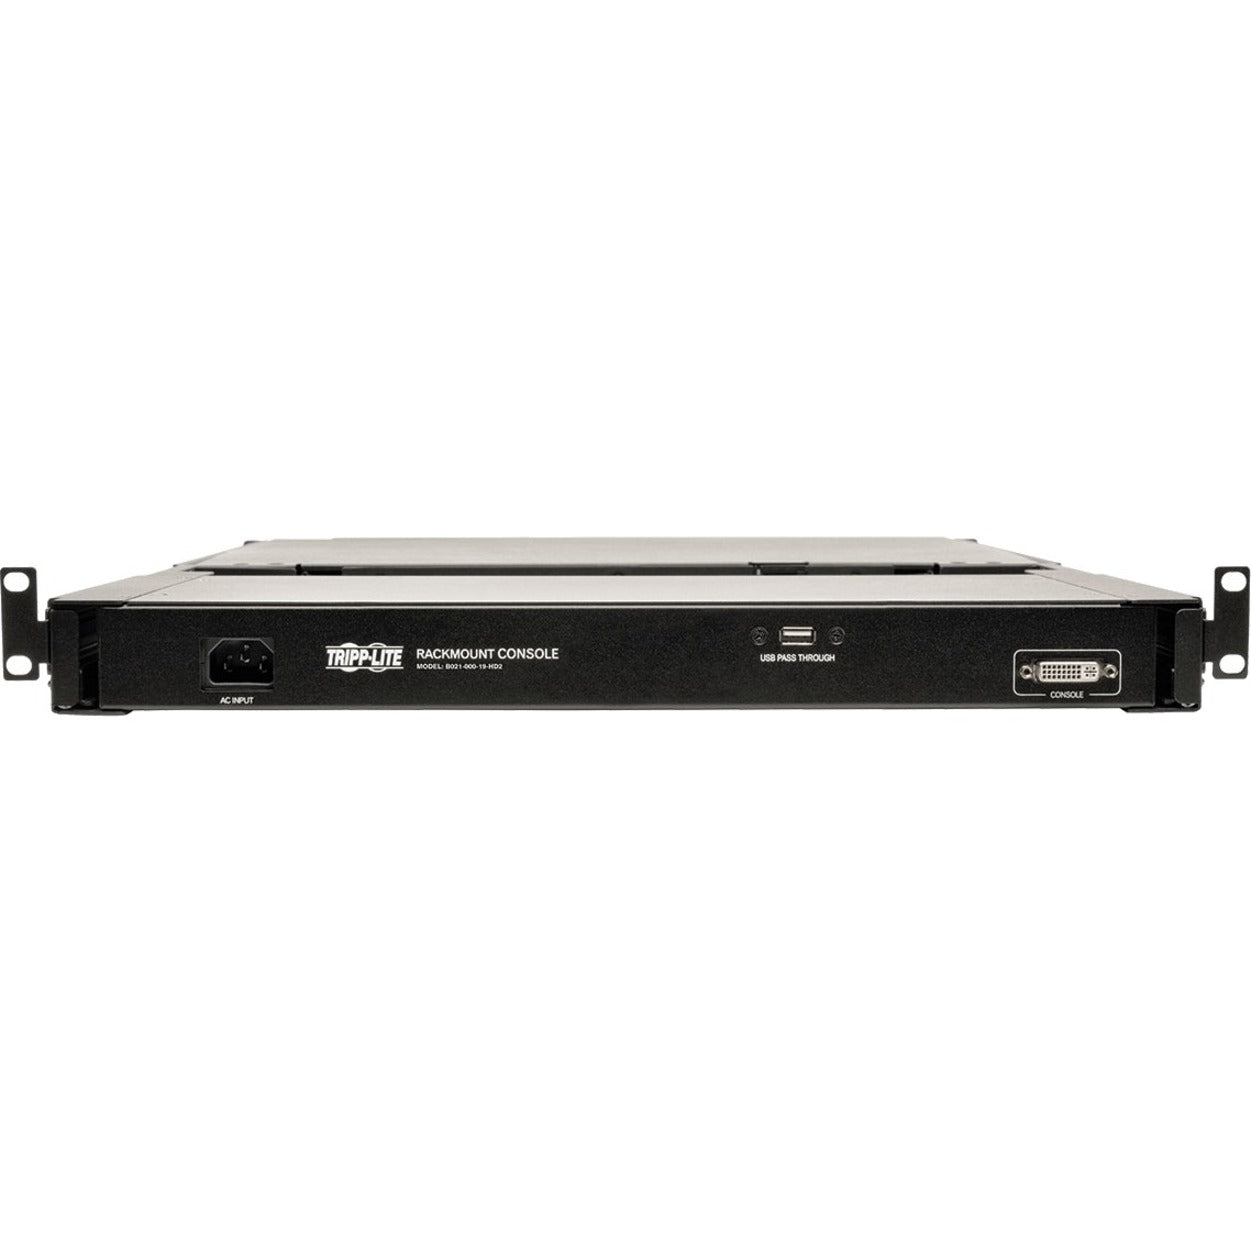 Tripp Lite B021-000-19-HD2 1U Rack-Mount Console with 19 in. LCD, DVI or VGA Video, TAA, Full HD